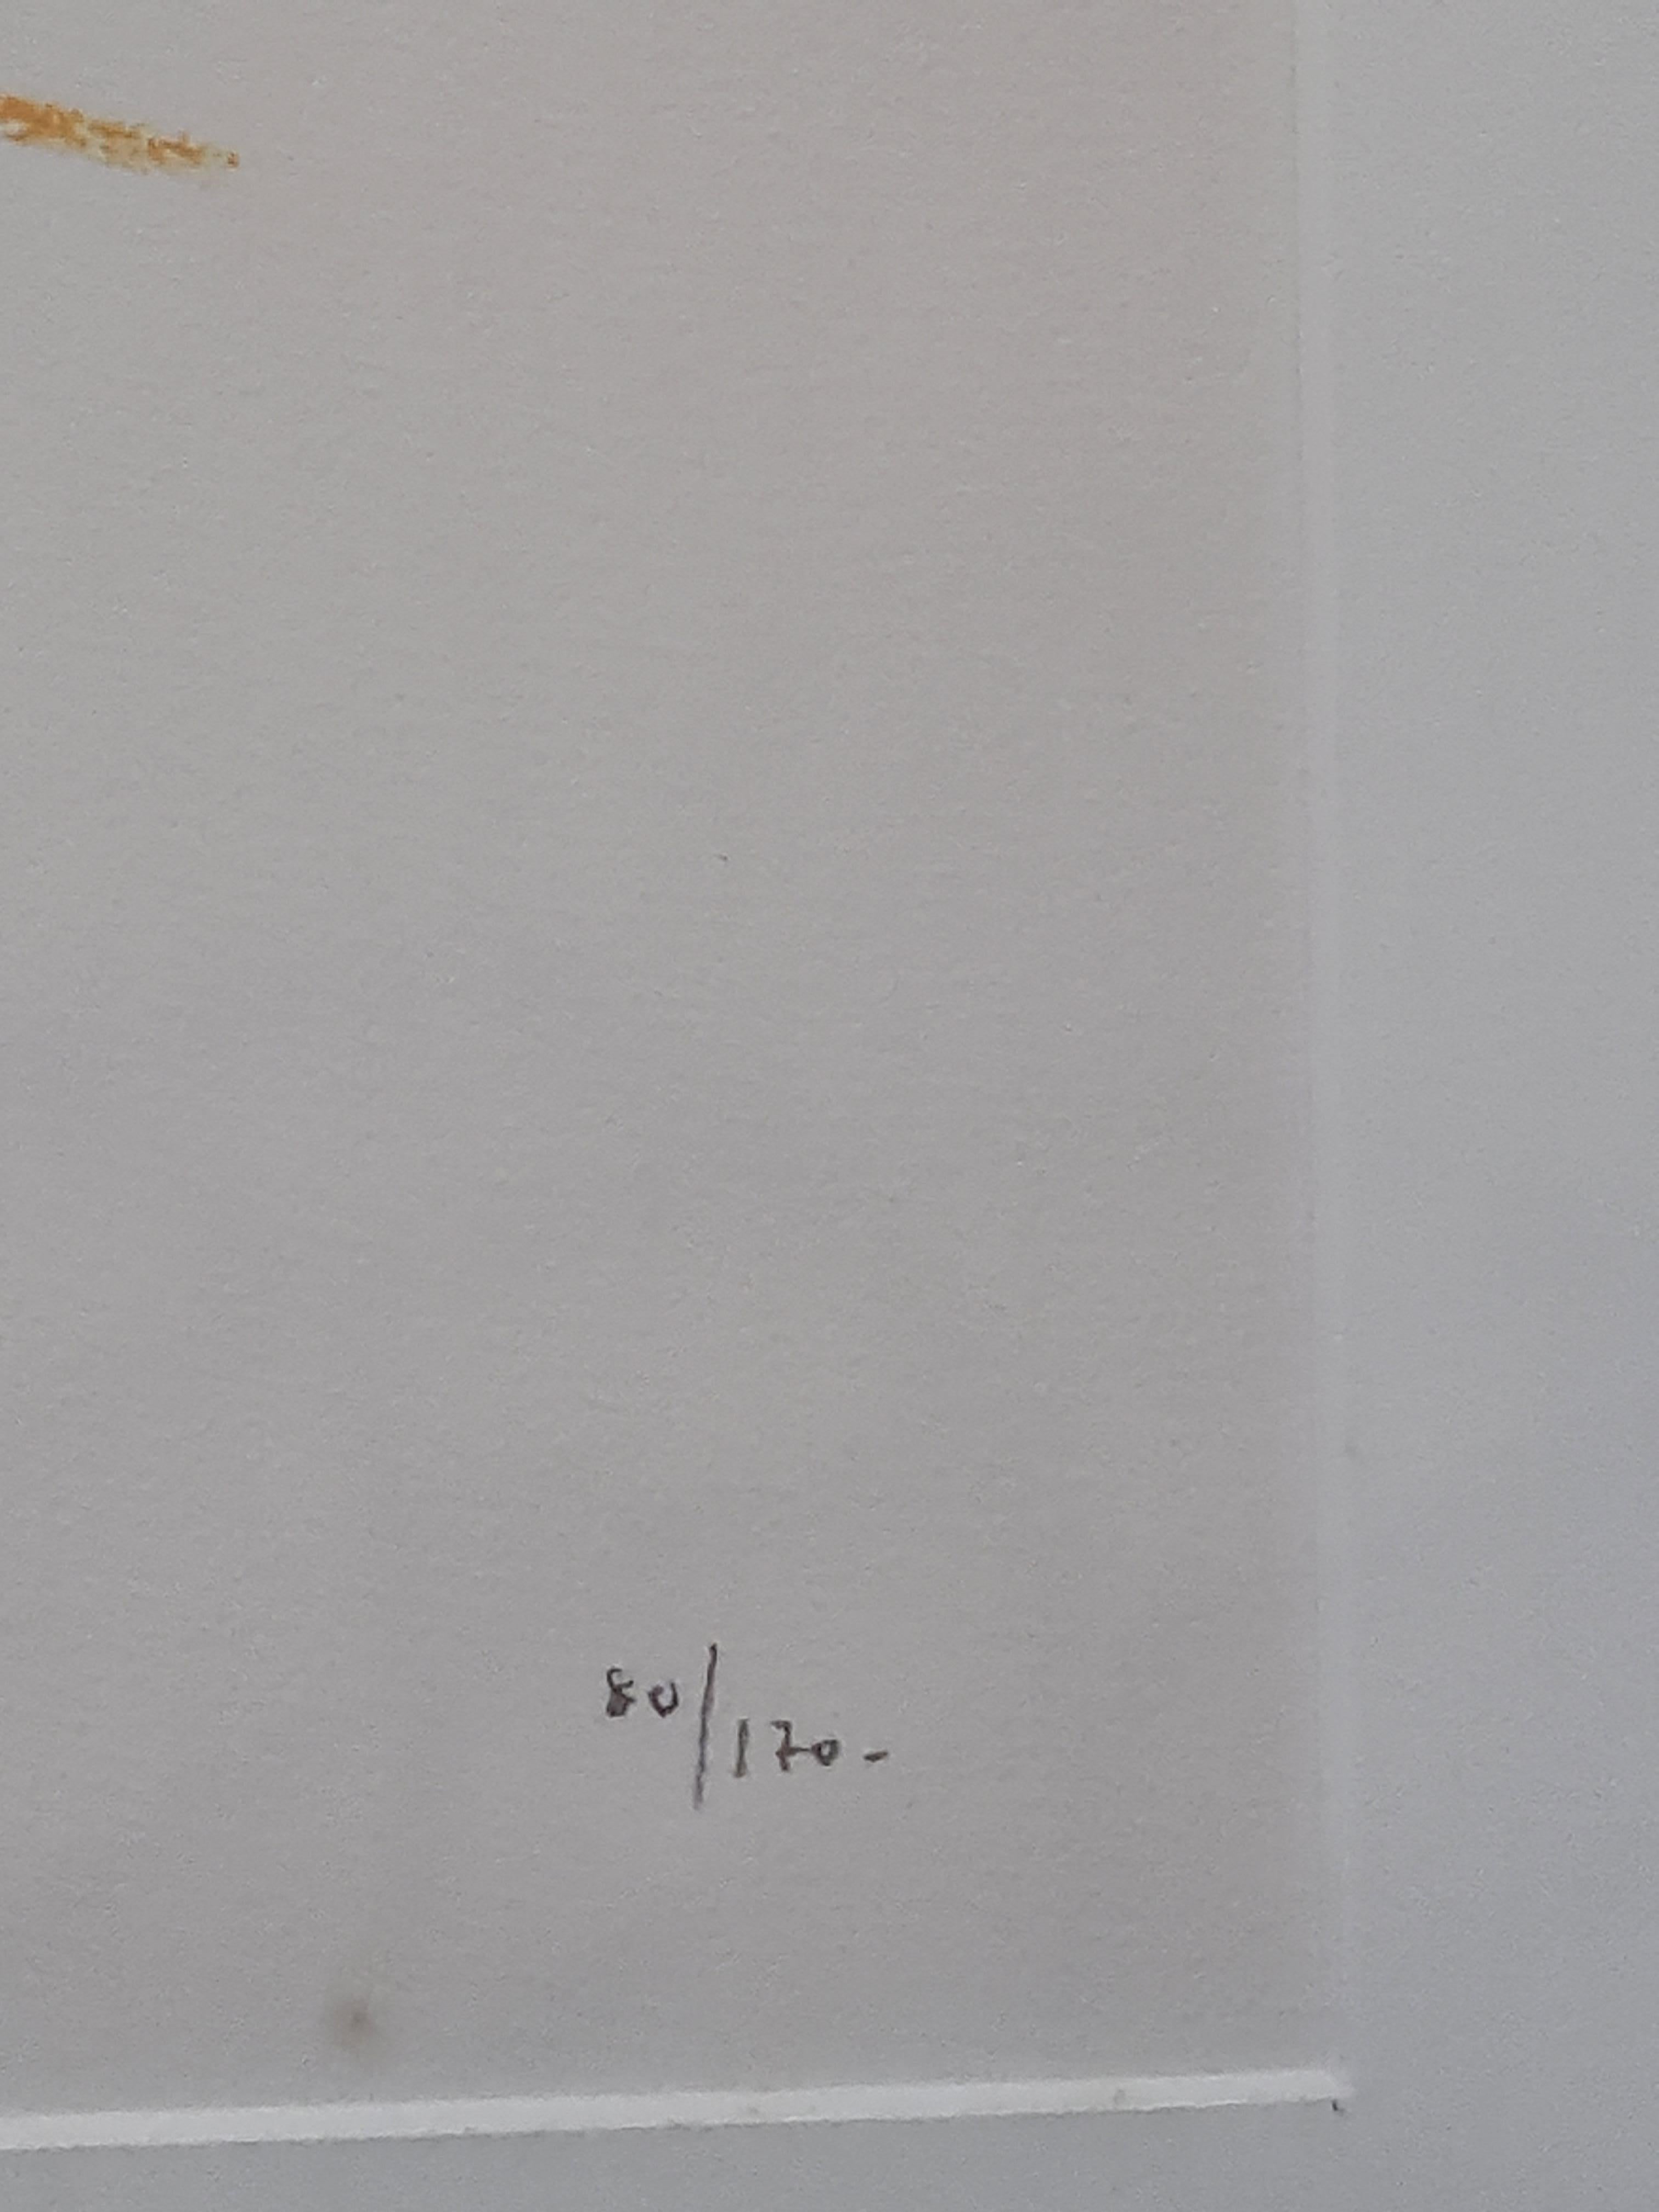 Lithographie d'avant-garde d'un nu féminin sur papier de l'artiste danois Wilhelm Freddie. Numéro 80 d'une édition de 170. Signé, daté et titré au crayon en bas à gauche, numéroté au crayon en bas à droite. Présenté dans un cadre en bois argenté